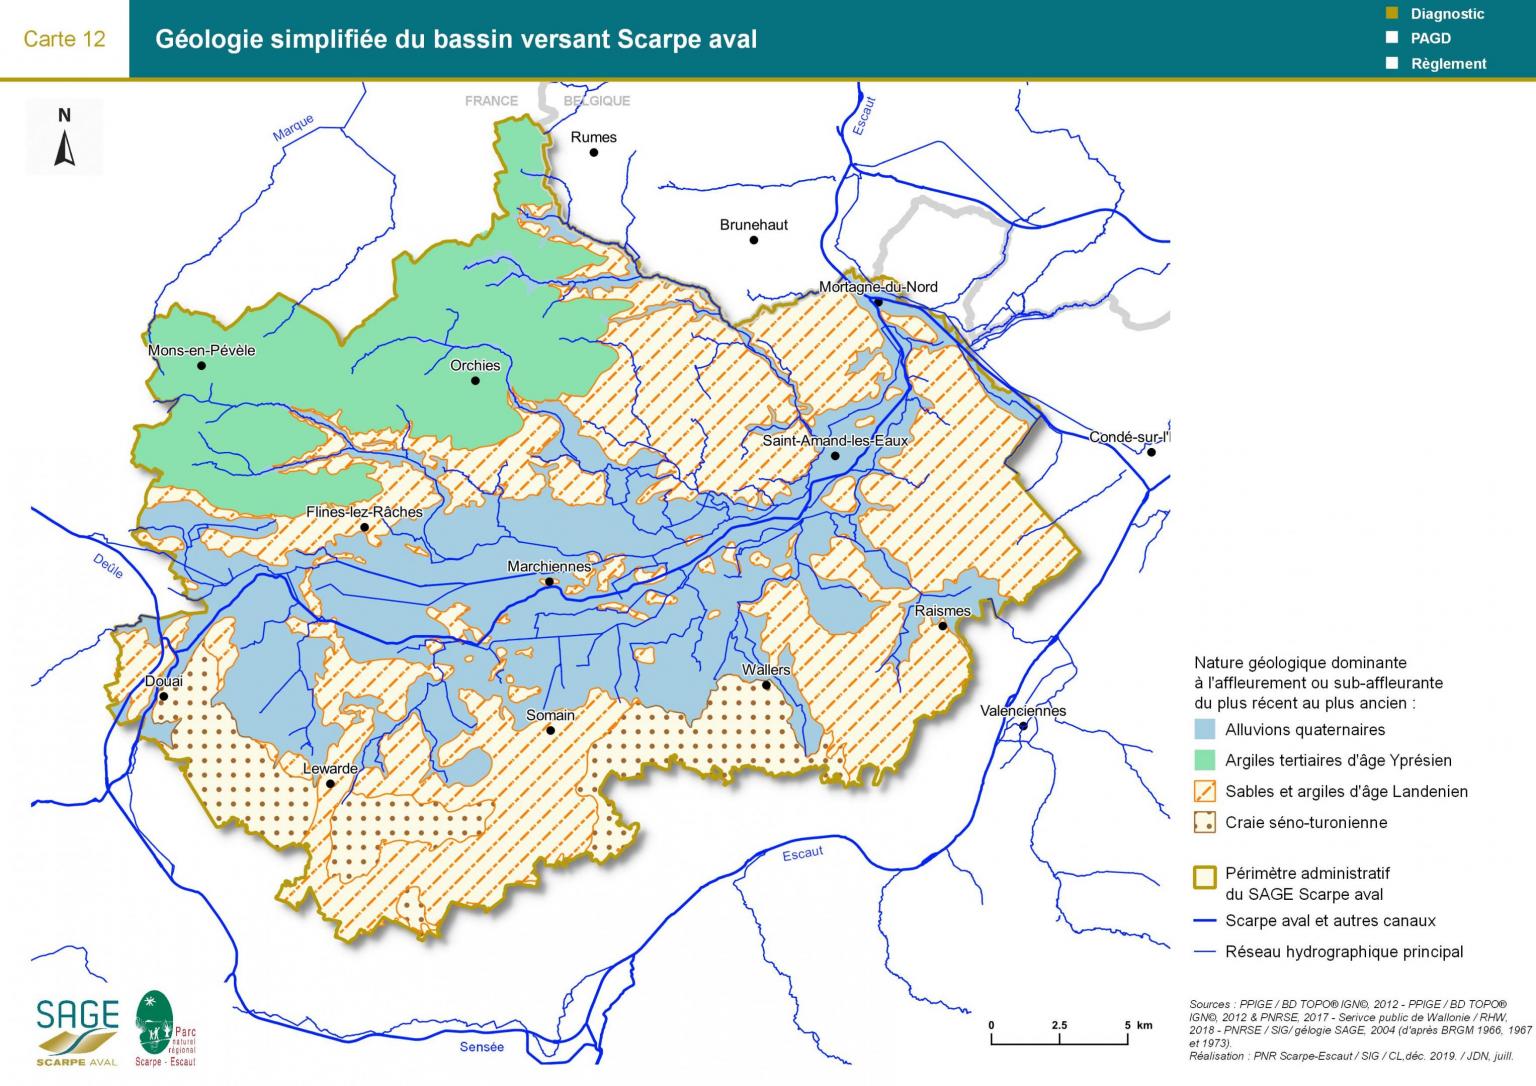 Etat des lieux - Carte 12 : Géologie simplifiée du bassin versant Scarpe aval